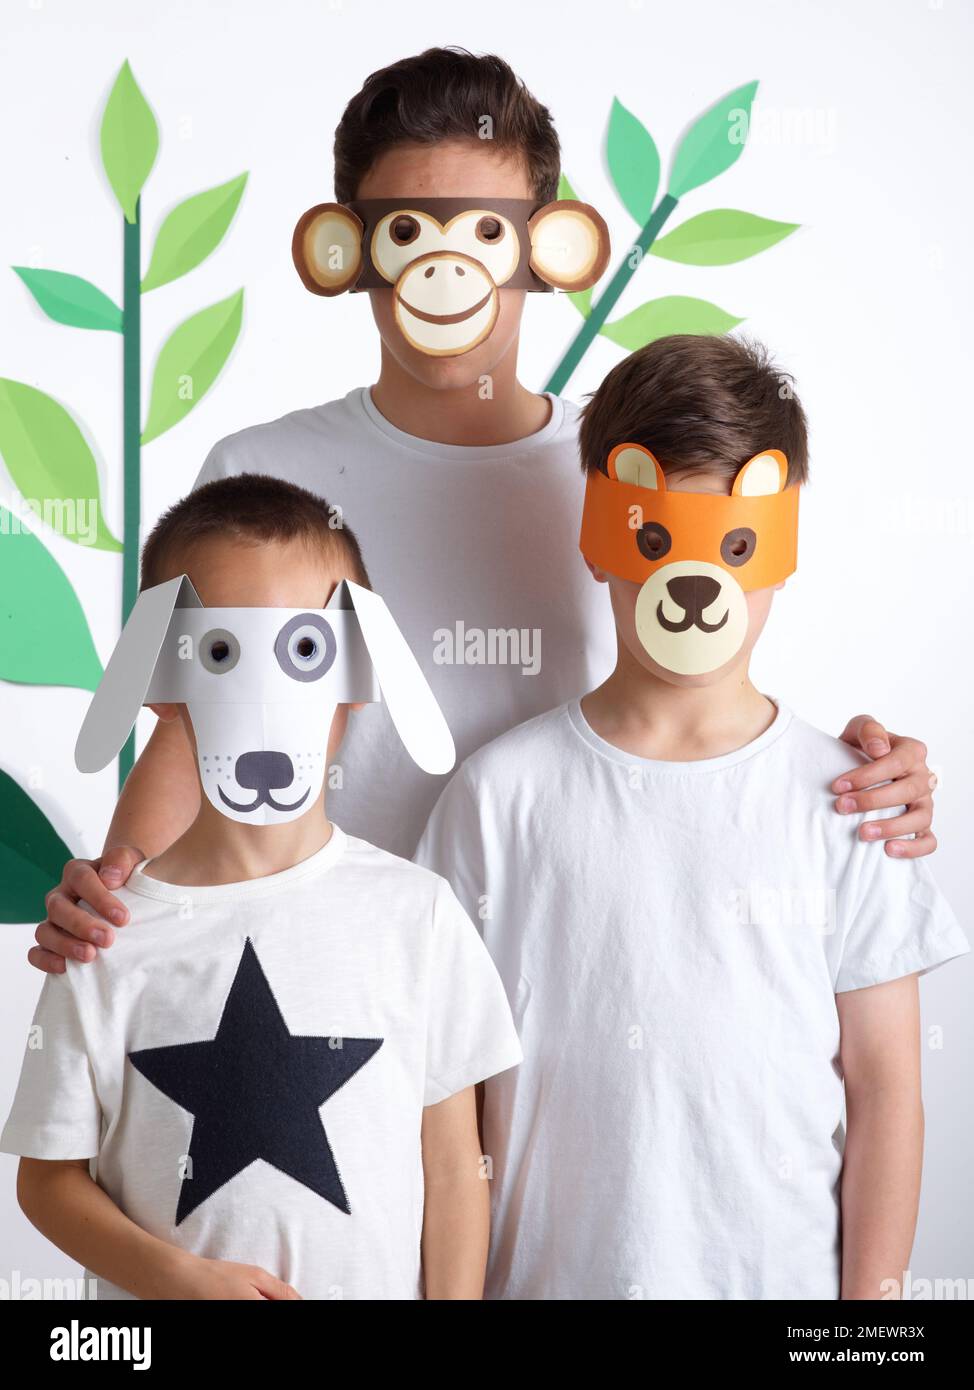 Papierhandwerk. Heimwerker-Tiermasken. Kinder in weißen T-Shirts mit Tiermasken. Affe, Bär und Hund. Stockfoto